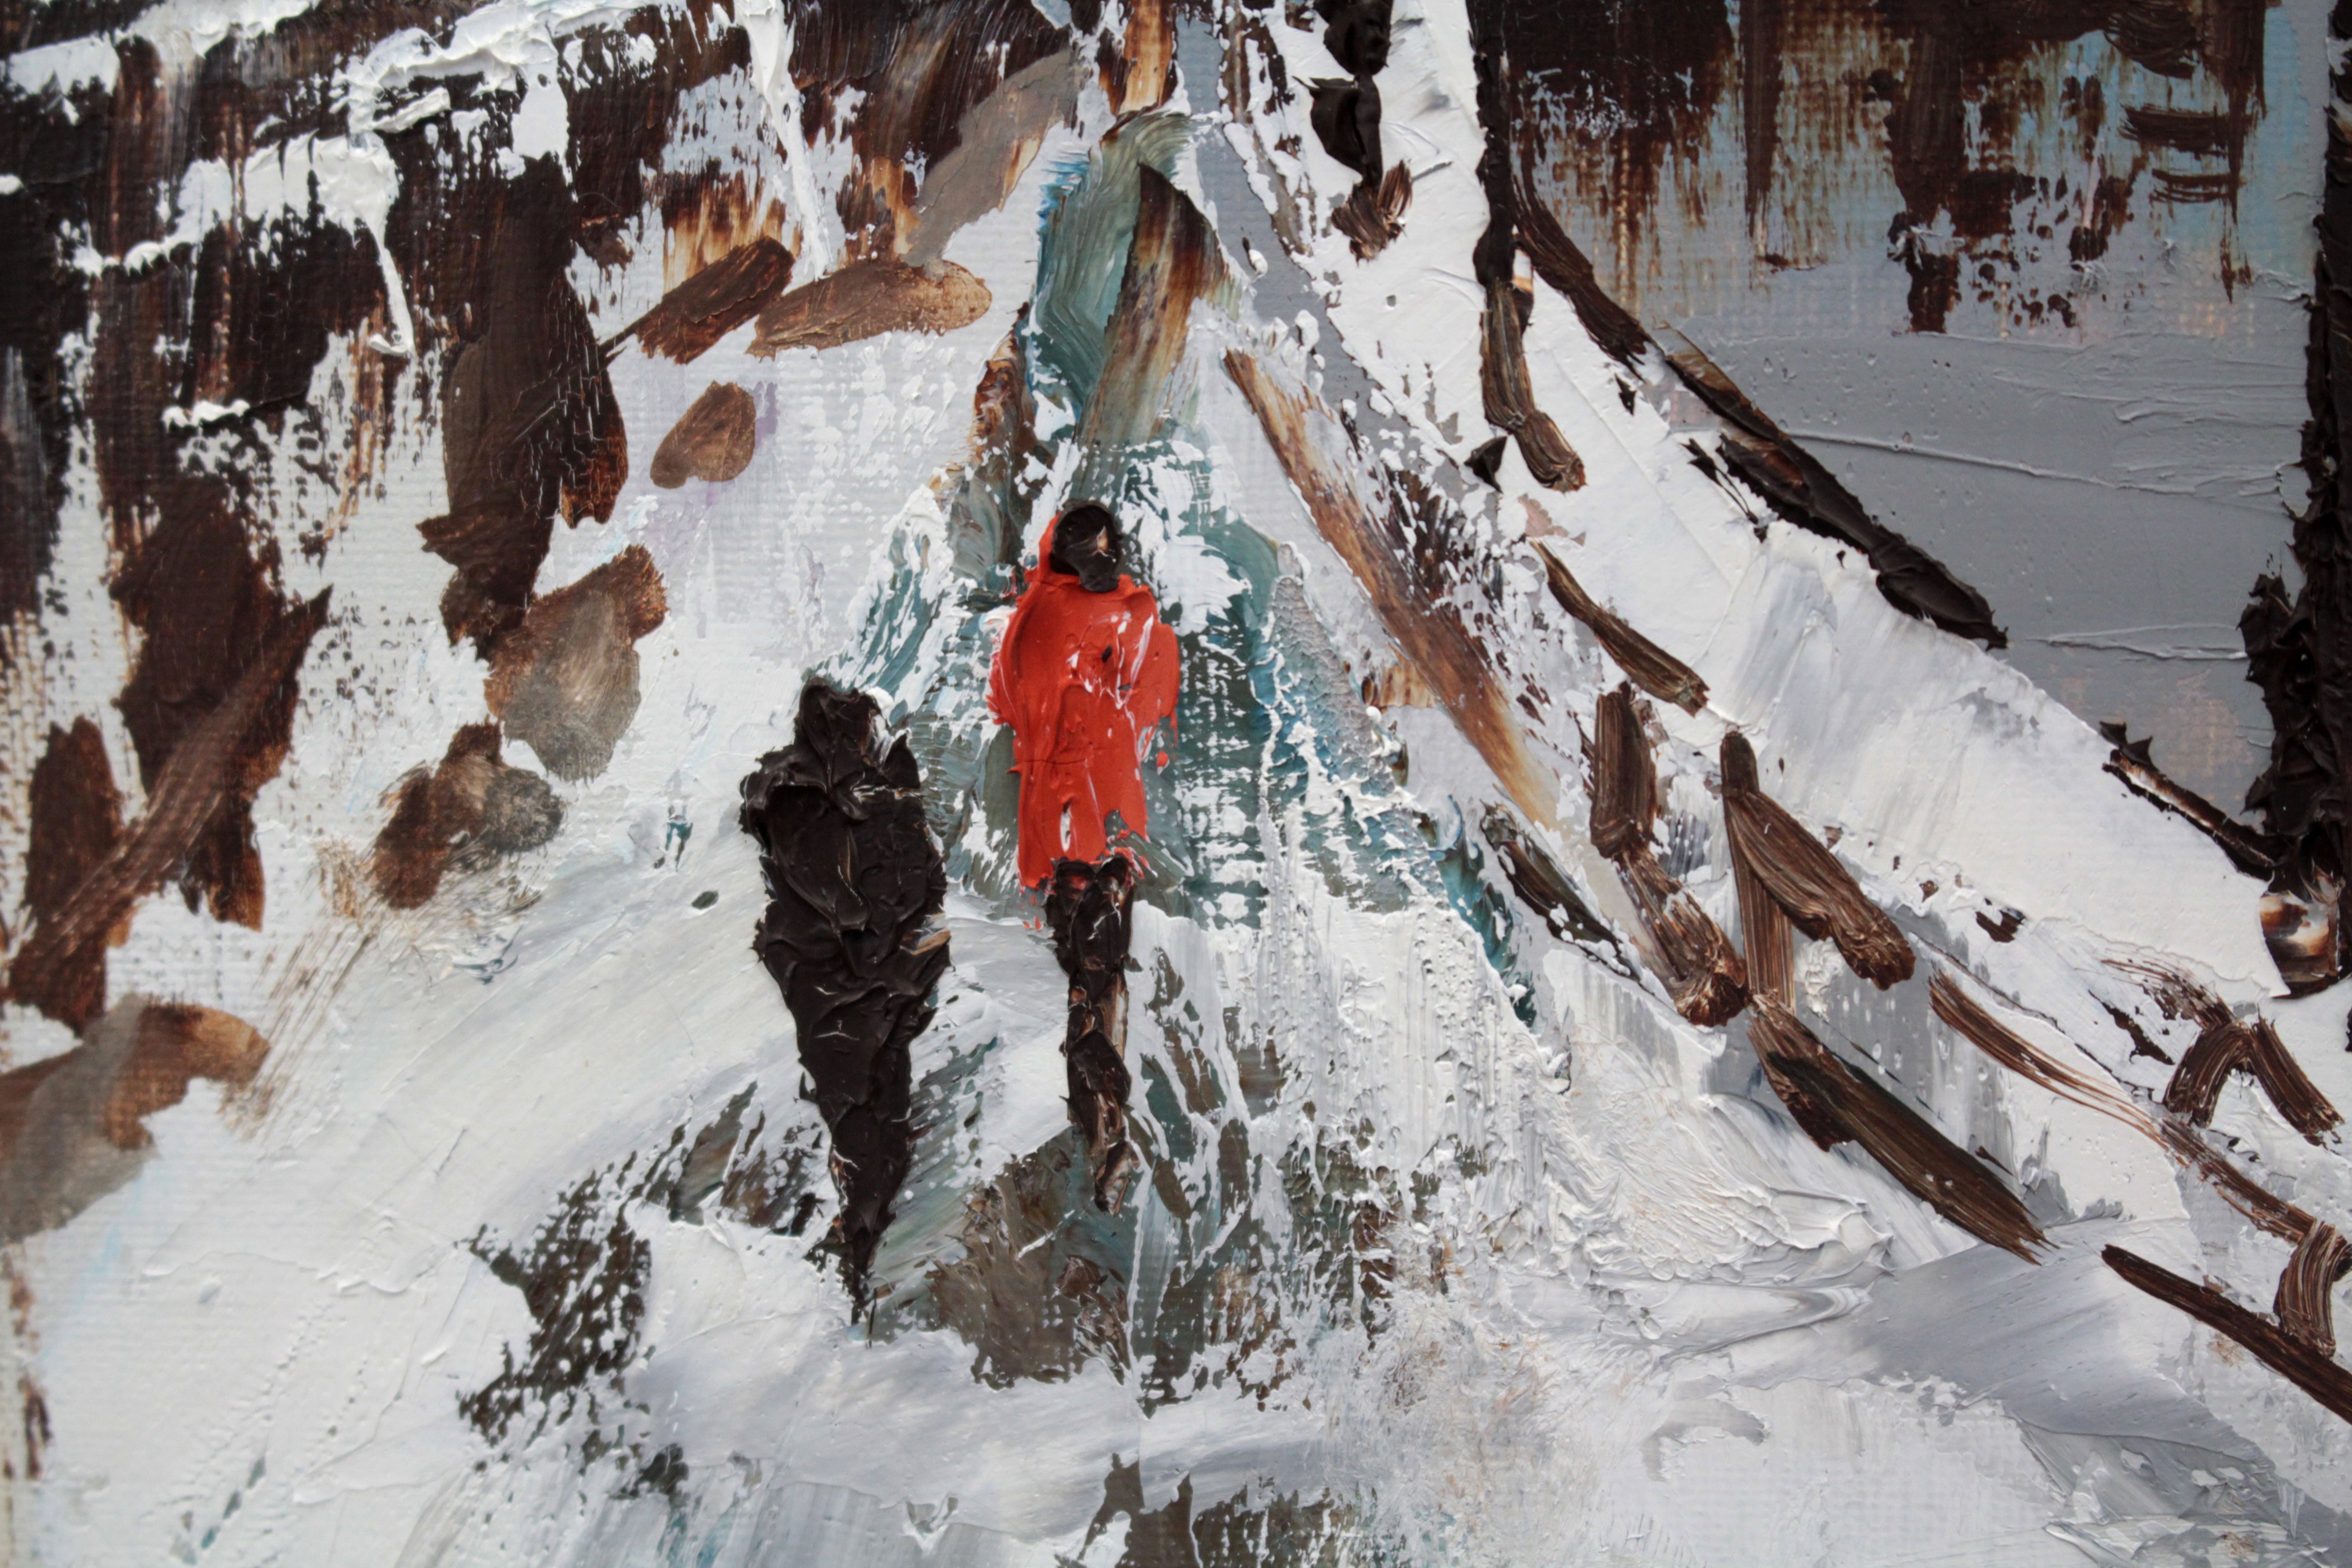 高橋益之 『雪の小樽運河』 油彩画 - 北海道画廊